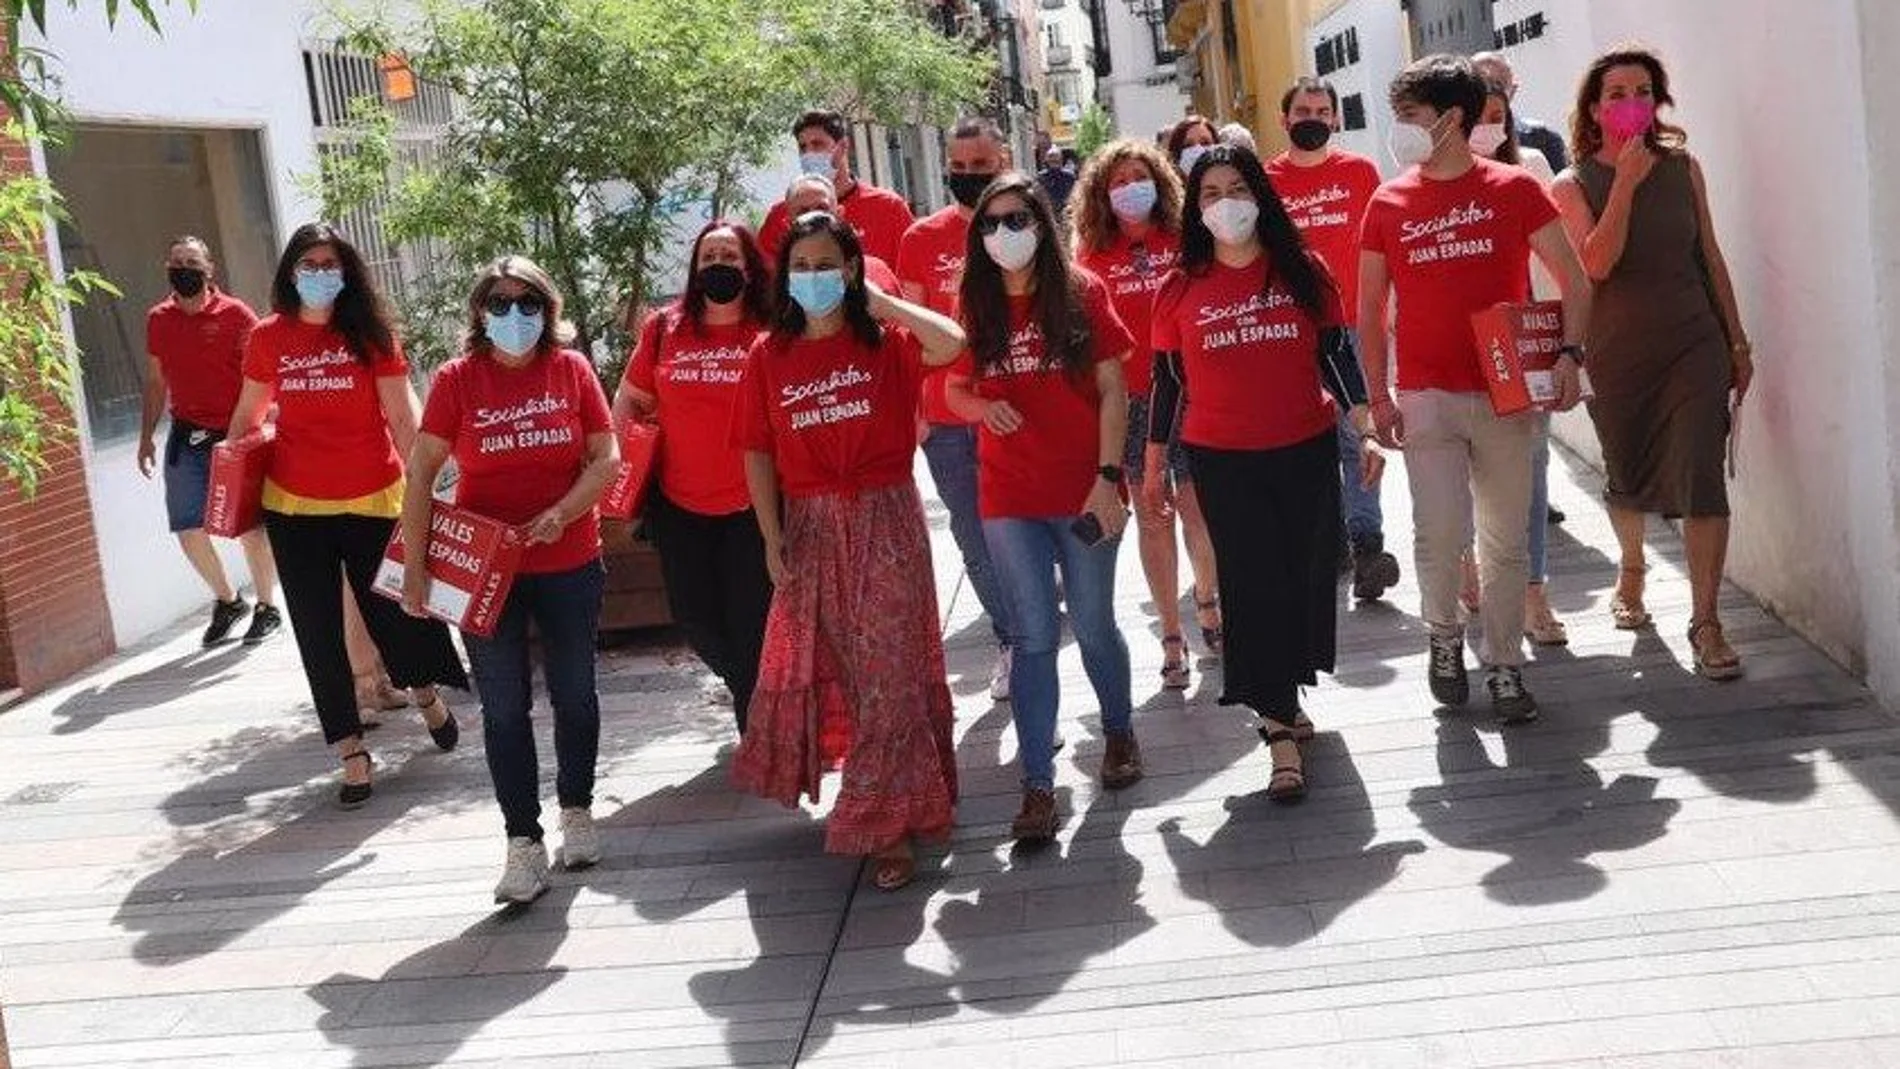 Representantes de la candidatura de Juan Espadas, enfundados en la misma camiseta al acudir ayer a entregar avales a la sede del PSOE-A